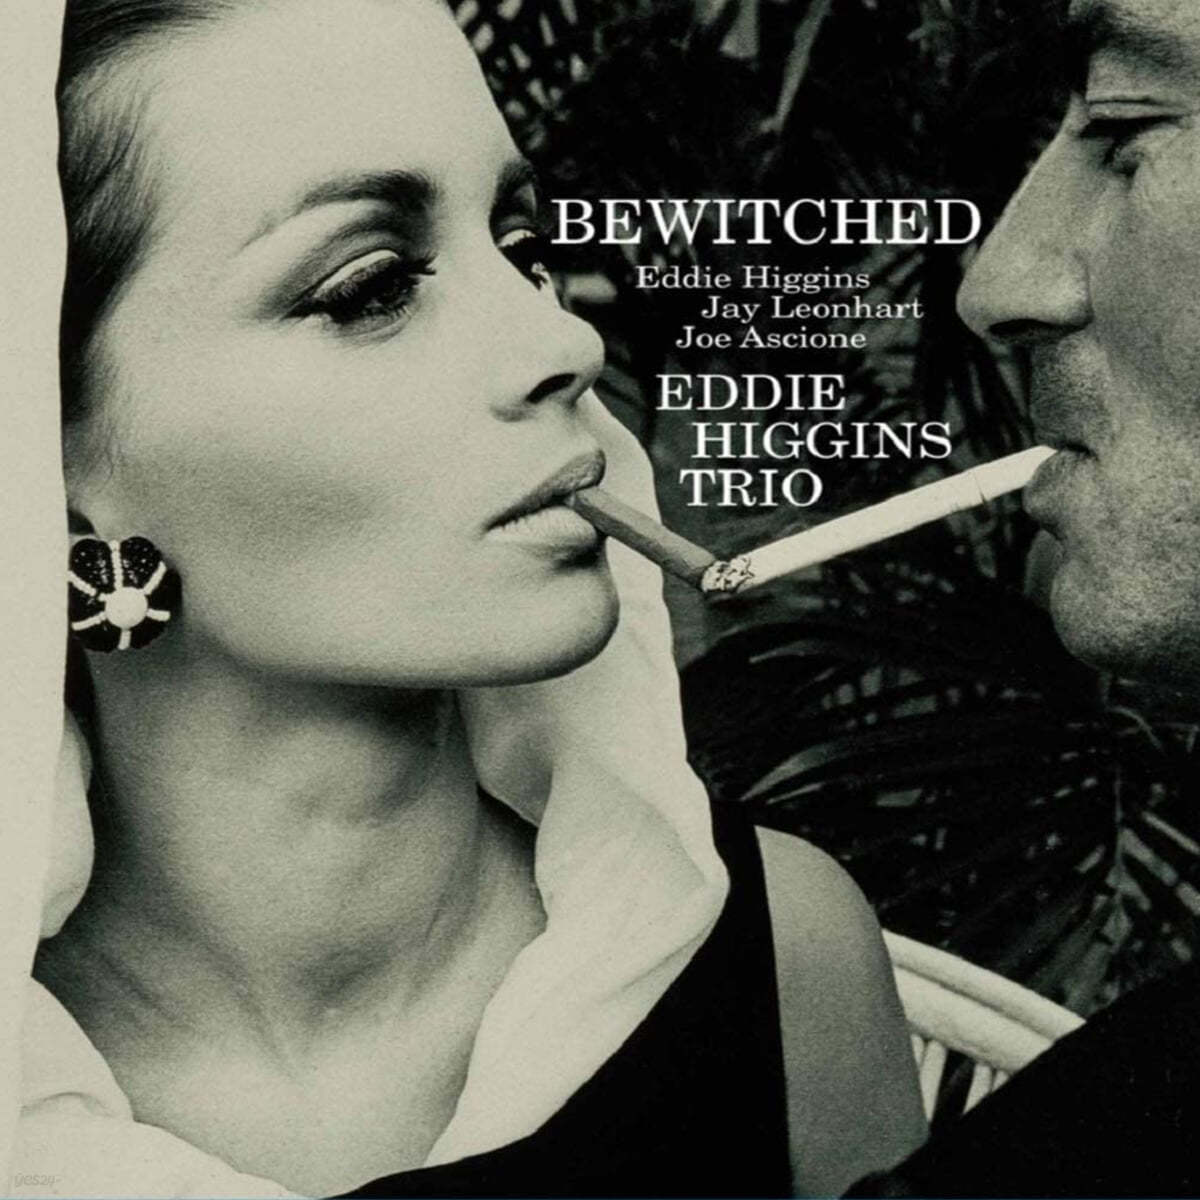 Eddie Higgins Trio (에디 히긴스 트리오) - Bewitched [2LP]